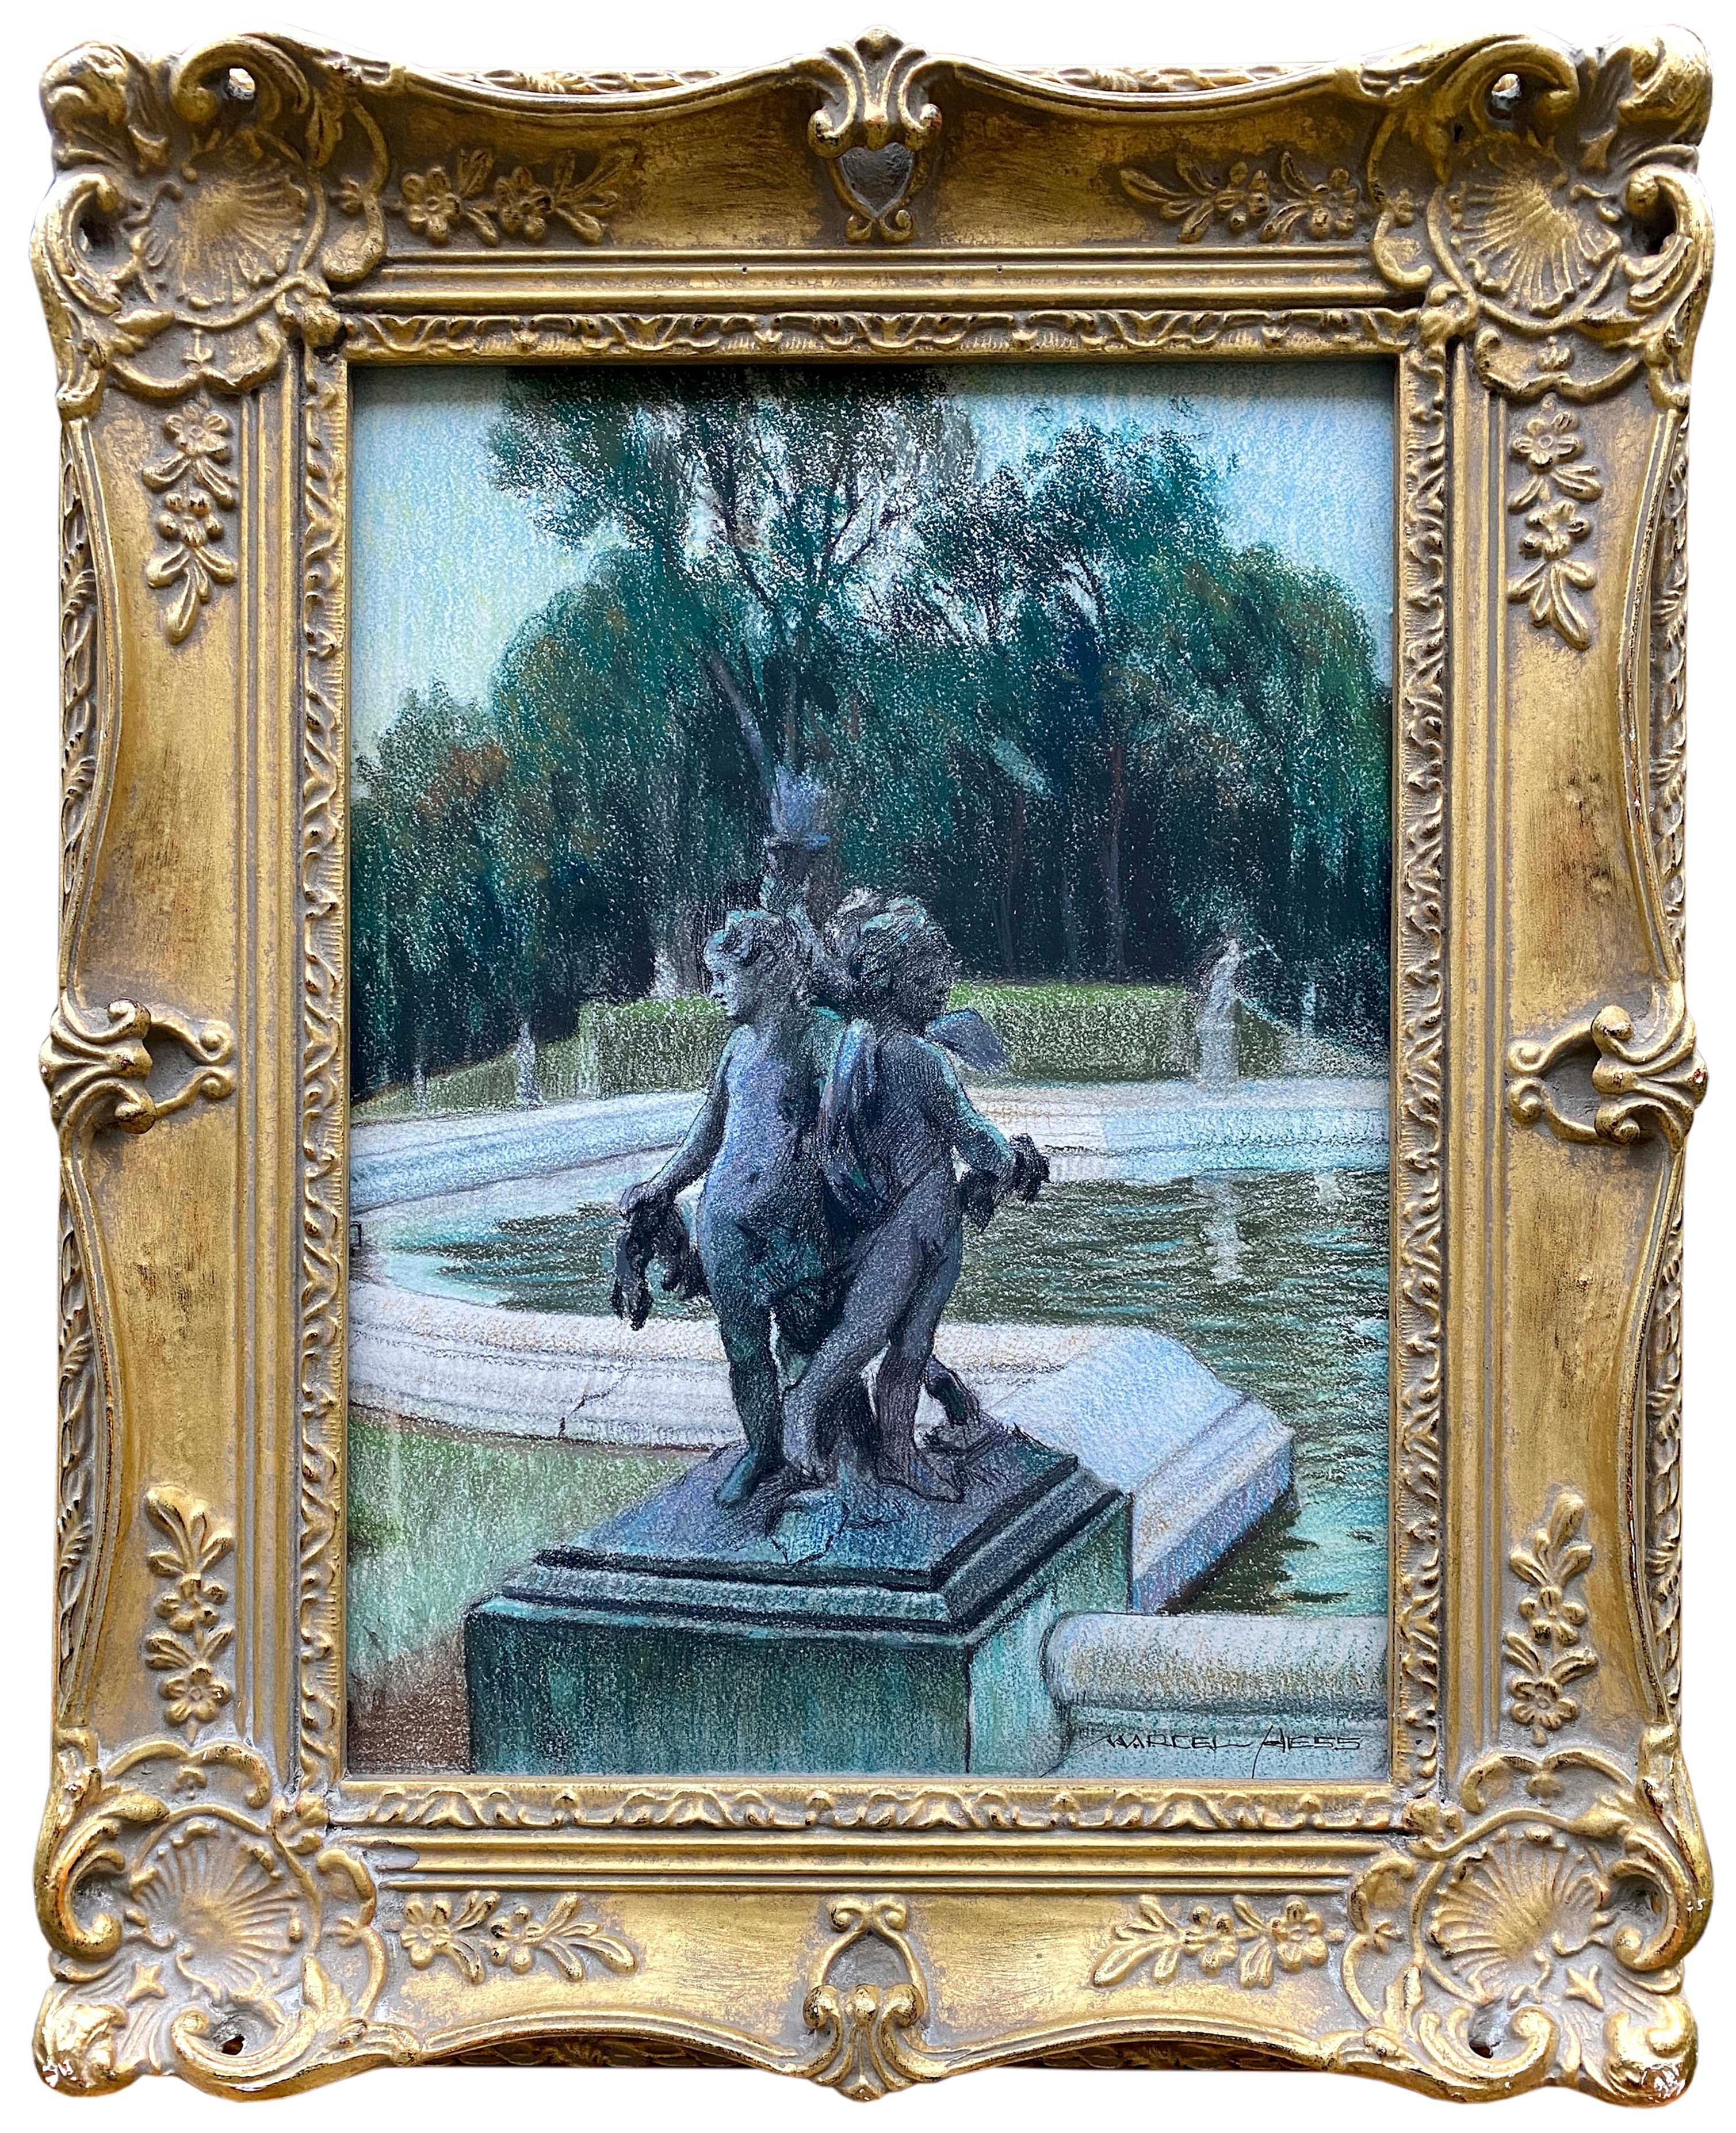 Trois anges dans une scène de parc, Marcel Hess, Bruxelles 1878 - 1948 Grimbergen